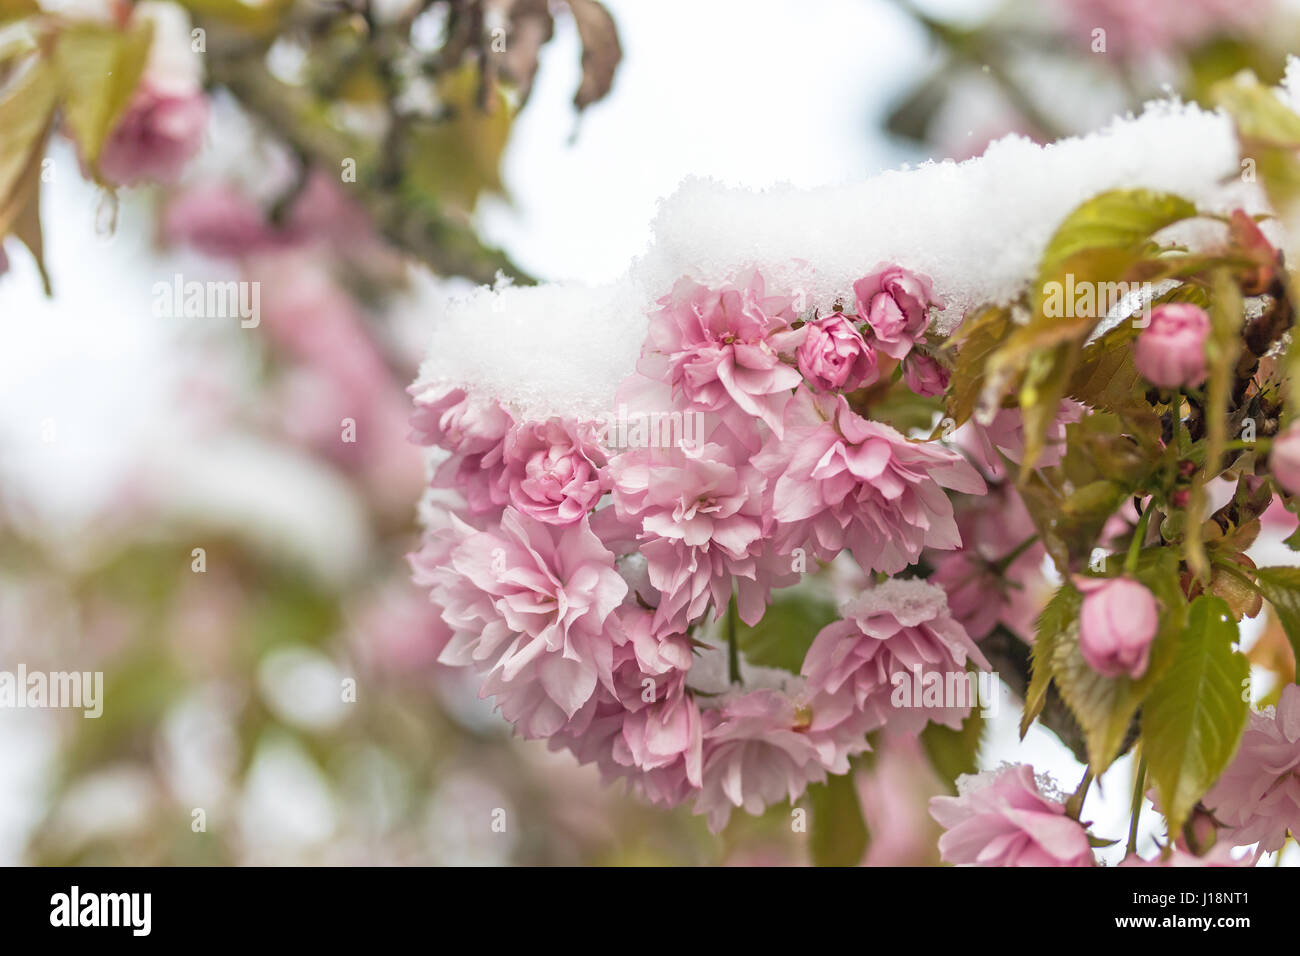 Snow on pink flowers of sakura tree Stock Photo